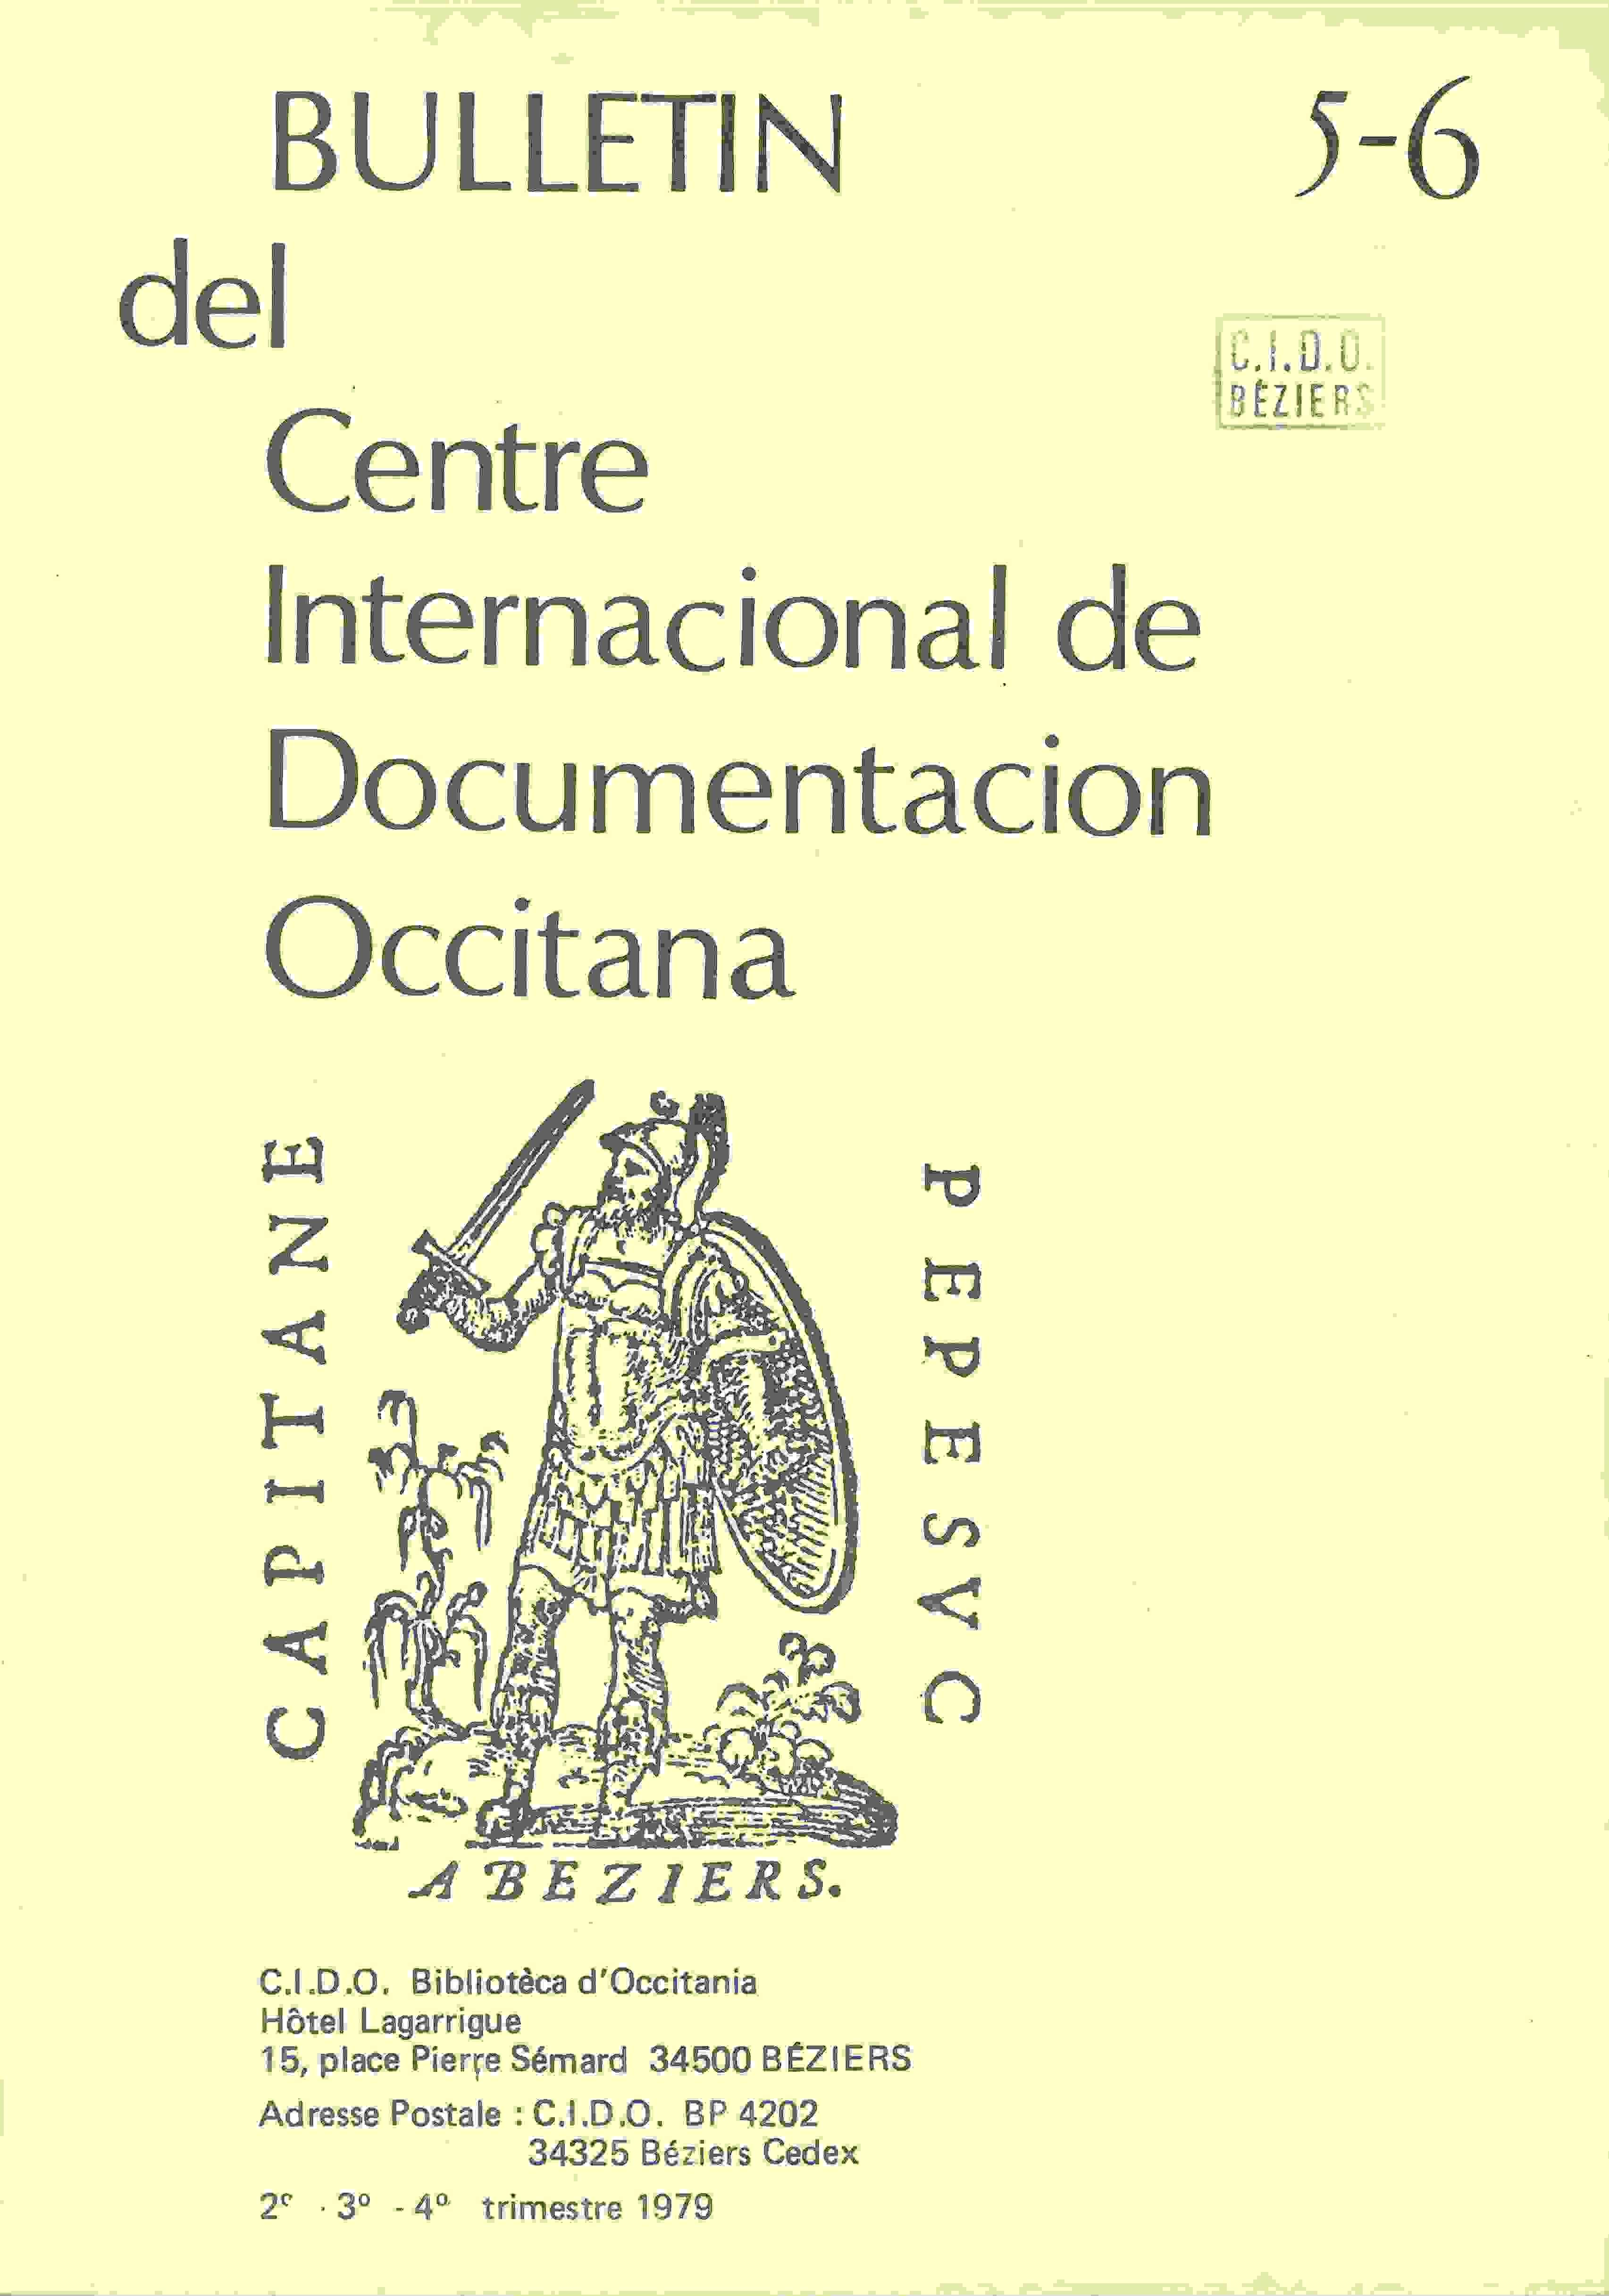 Bulletin del Centre Internacional de Documentacion Occitana publié de 1976 à 1979.